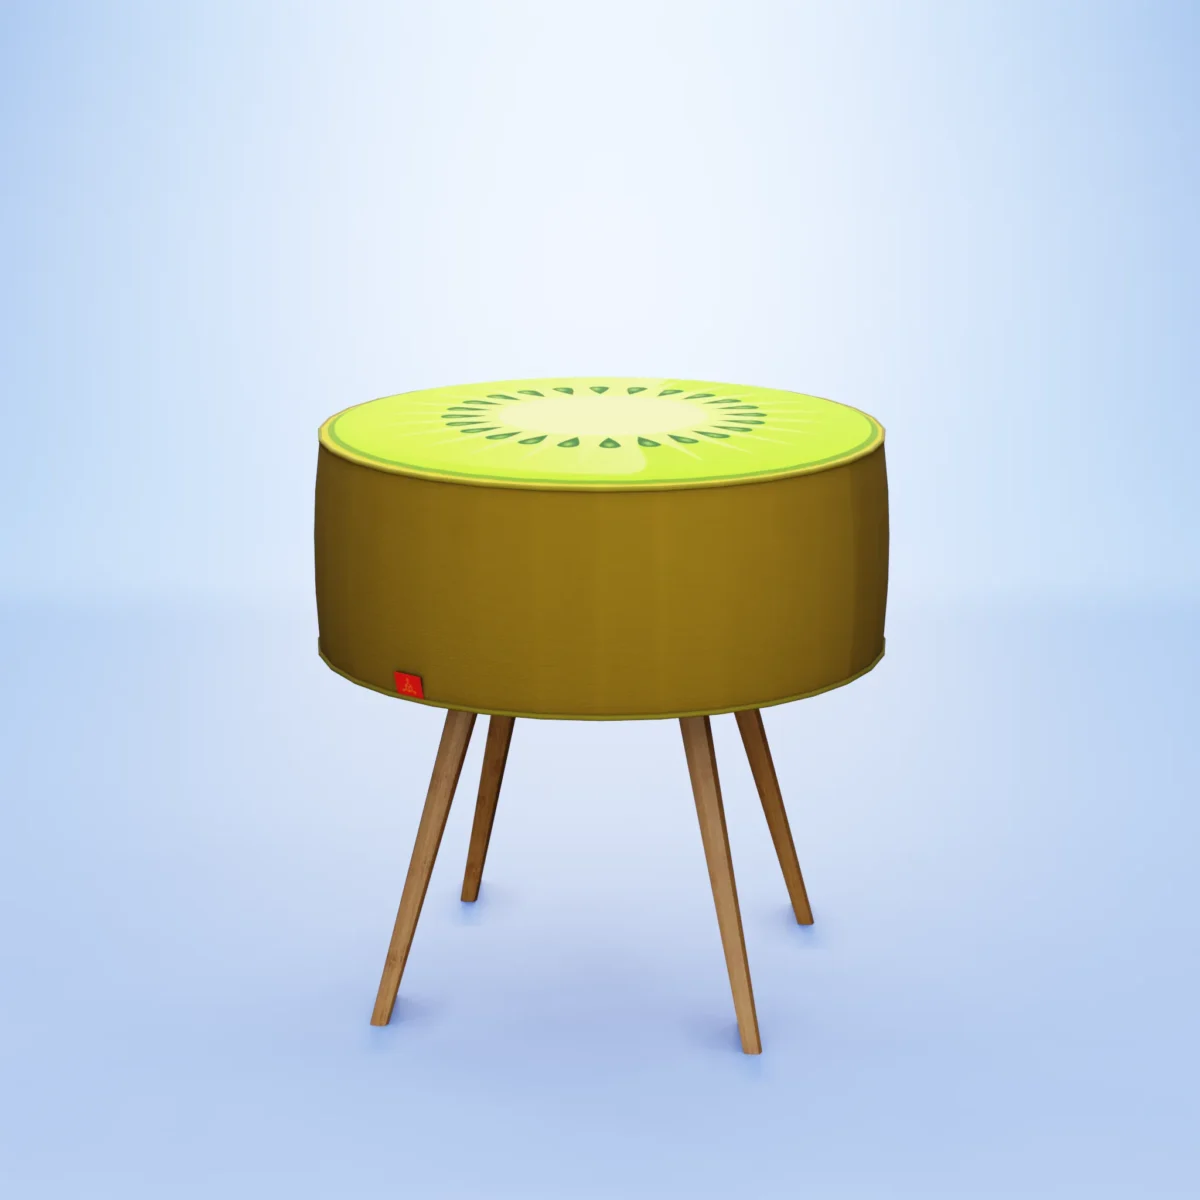 s3d-fruit-stool-kiwi